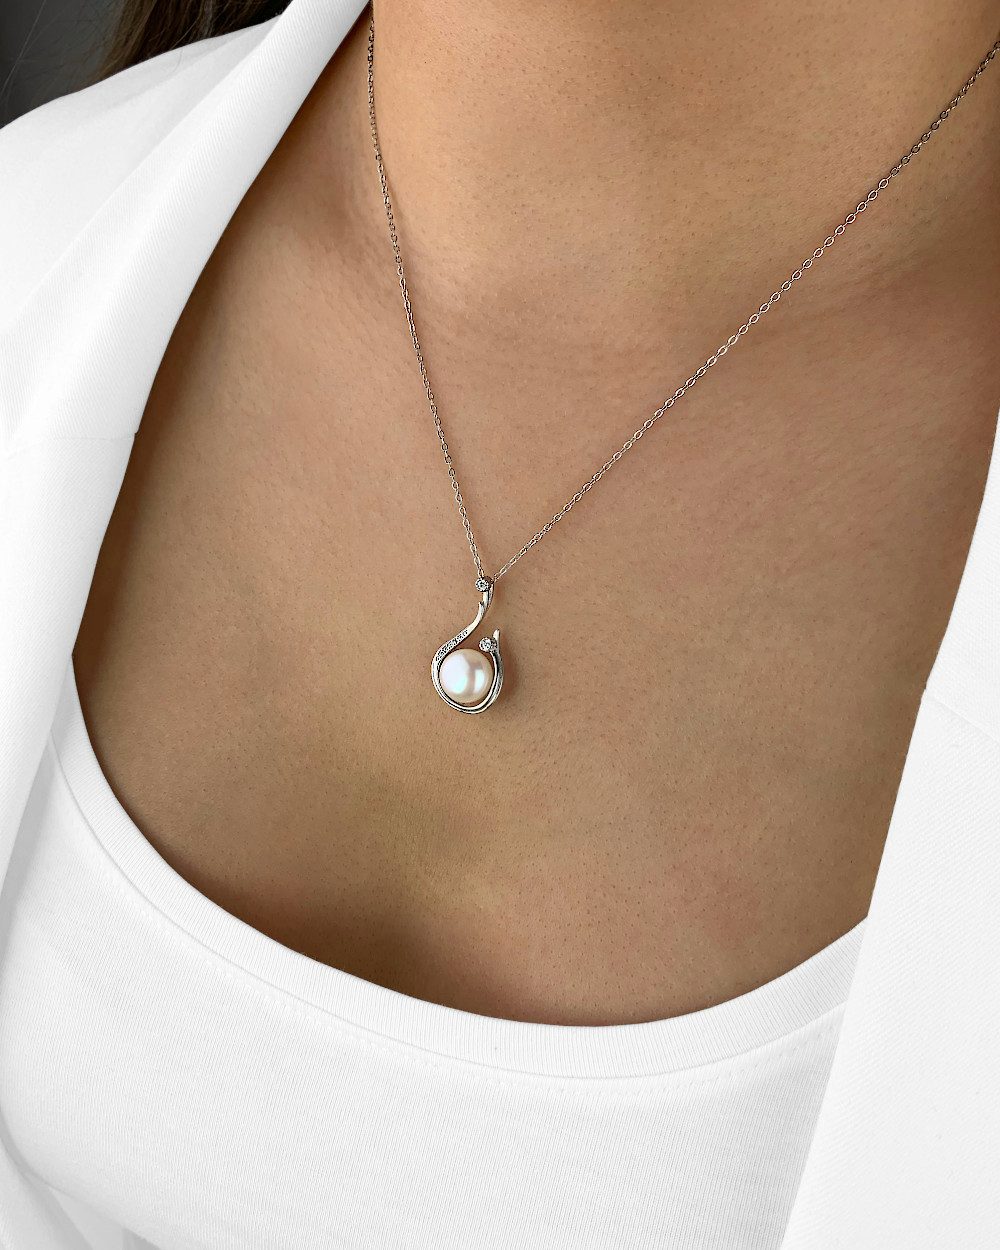 DANIEL CLIFFORD Perlenkette 'Nancy' Damen Halskette Silber 925 mit Perlen und Kristall (inkl. Verpackung), größenverstellbare Silberkette 40cm - 45cm, hautfreundlich